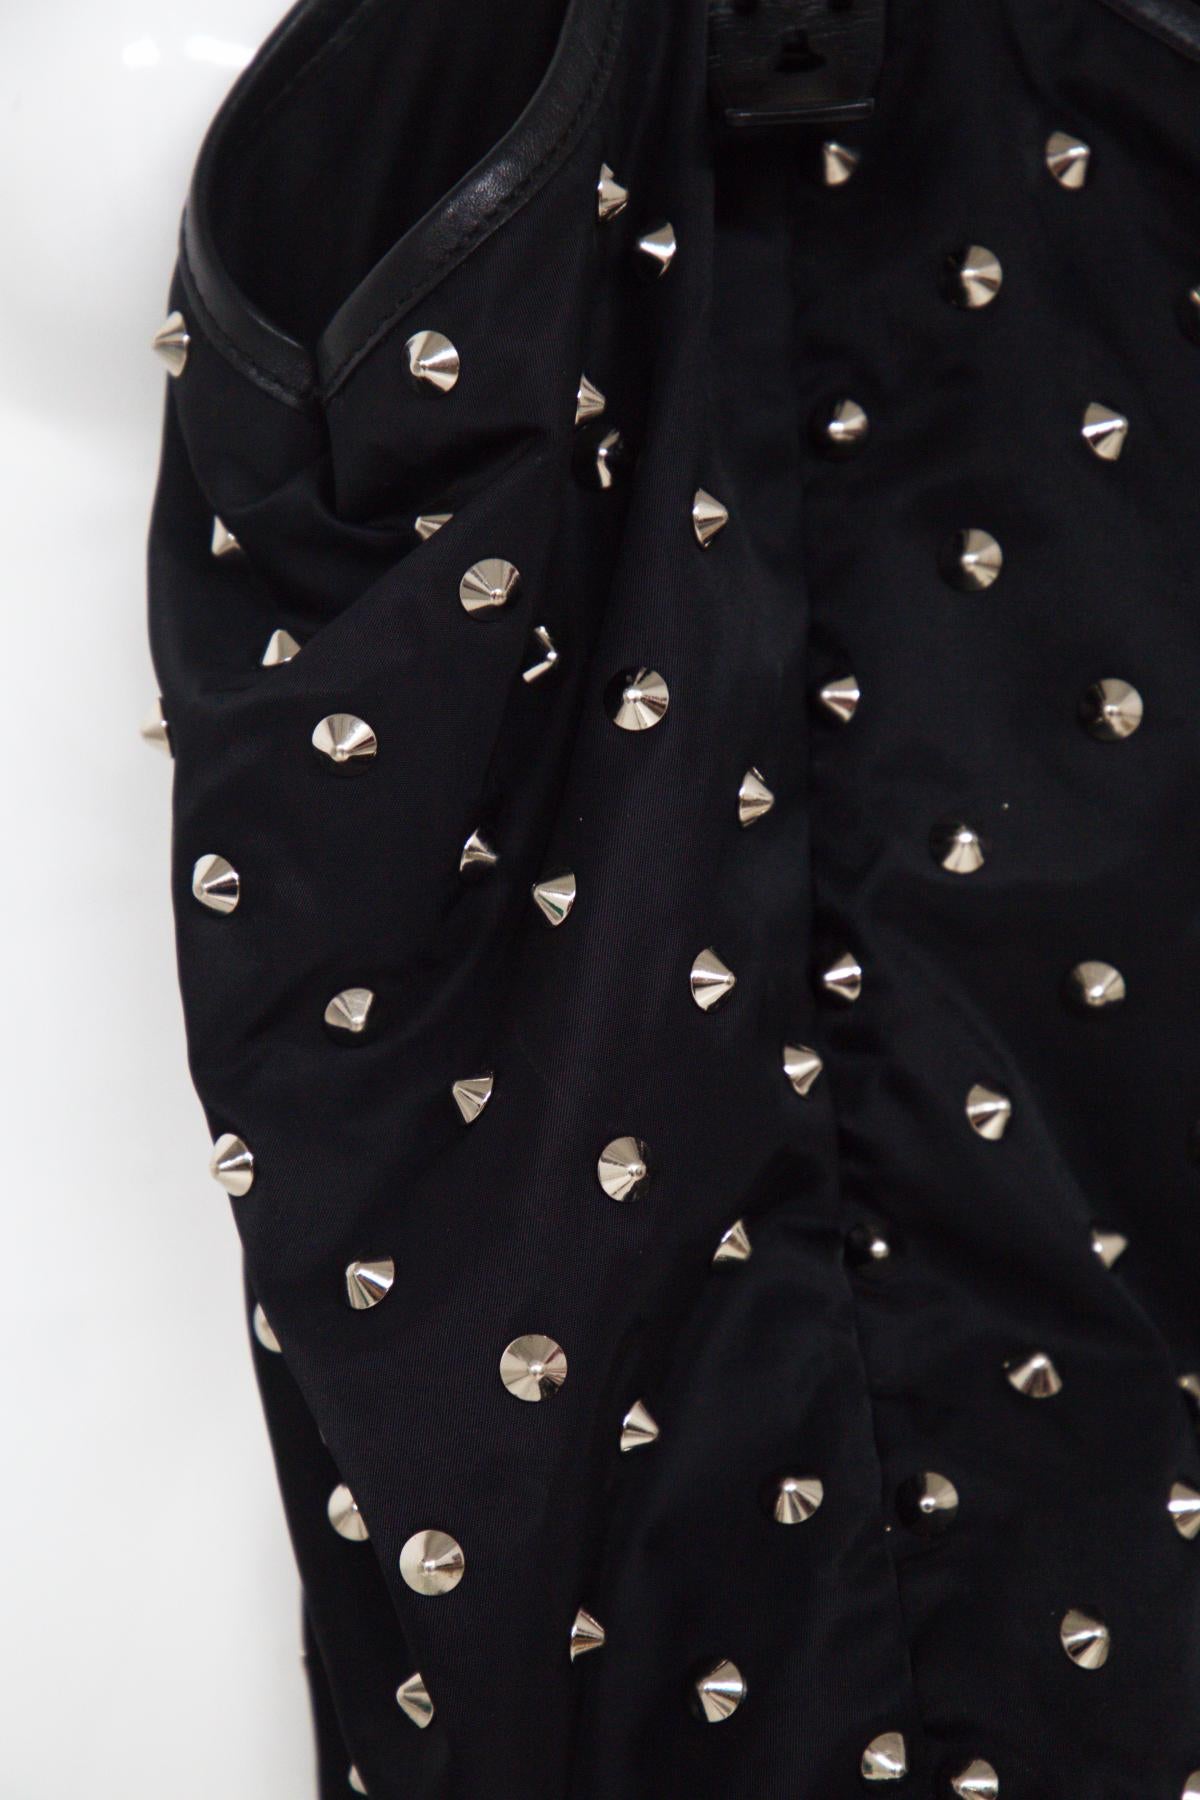 Superbe sac noir Givenchy des années 2000.
Le sac se compose d'un corps en nylon noir orné de clous argentés, de poignées en cuir plat brillant, d'une fermeture à bouton-pression magnétique sur le dessus et de poches intérieures zippées et à